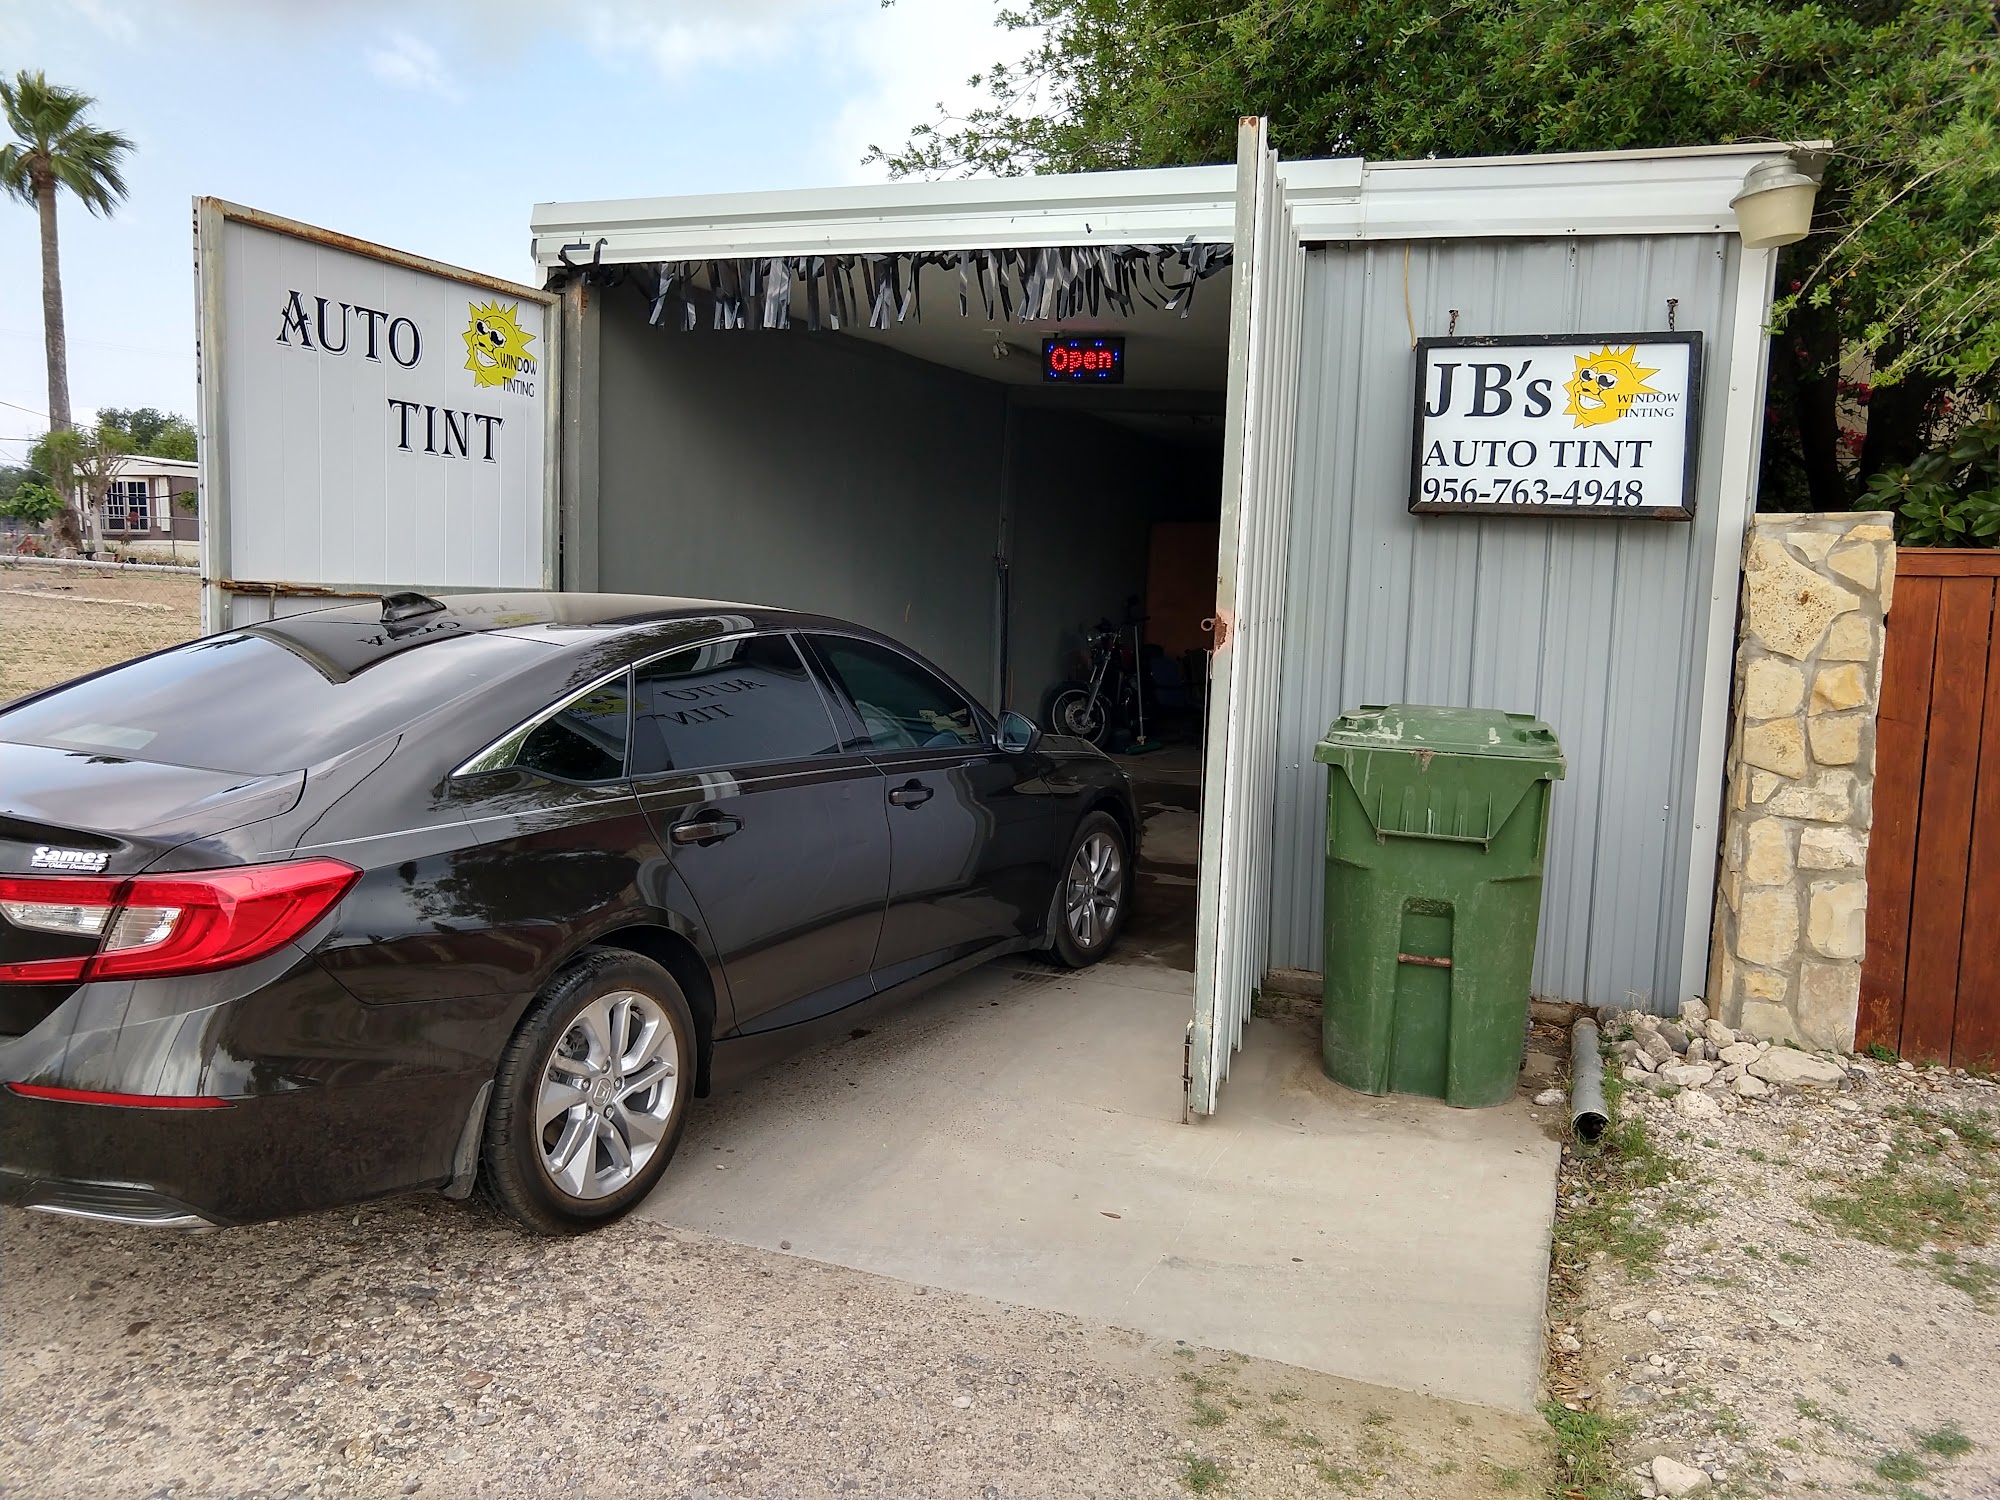 JB's Auto Tint 1011 Roma Ave, Zapata Texas 78076